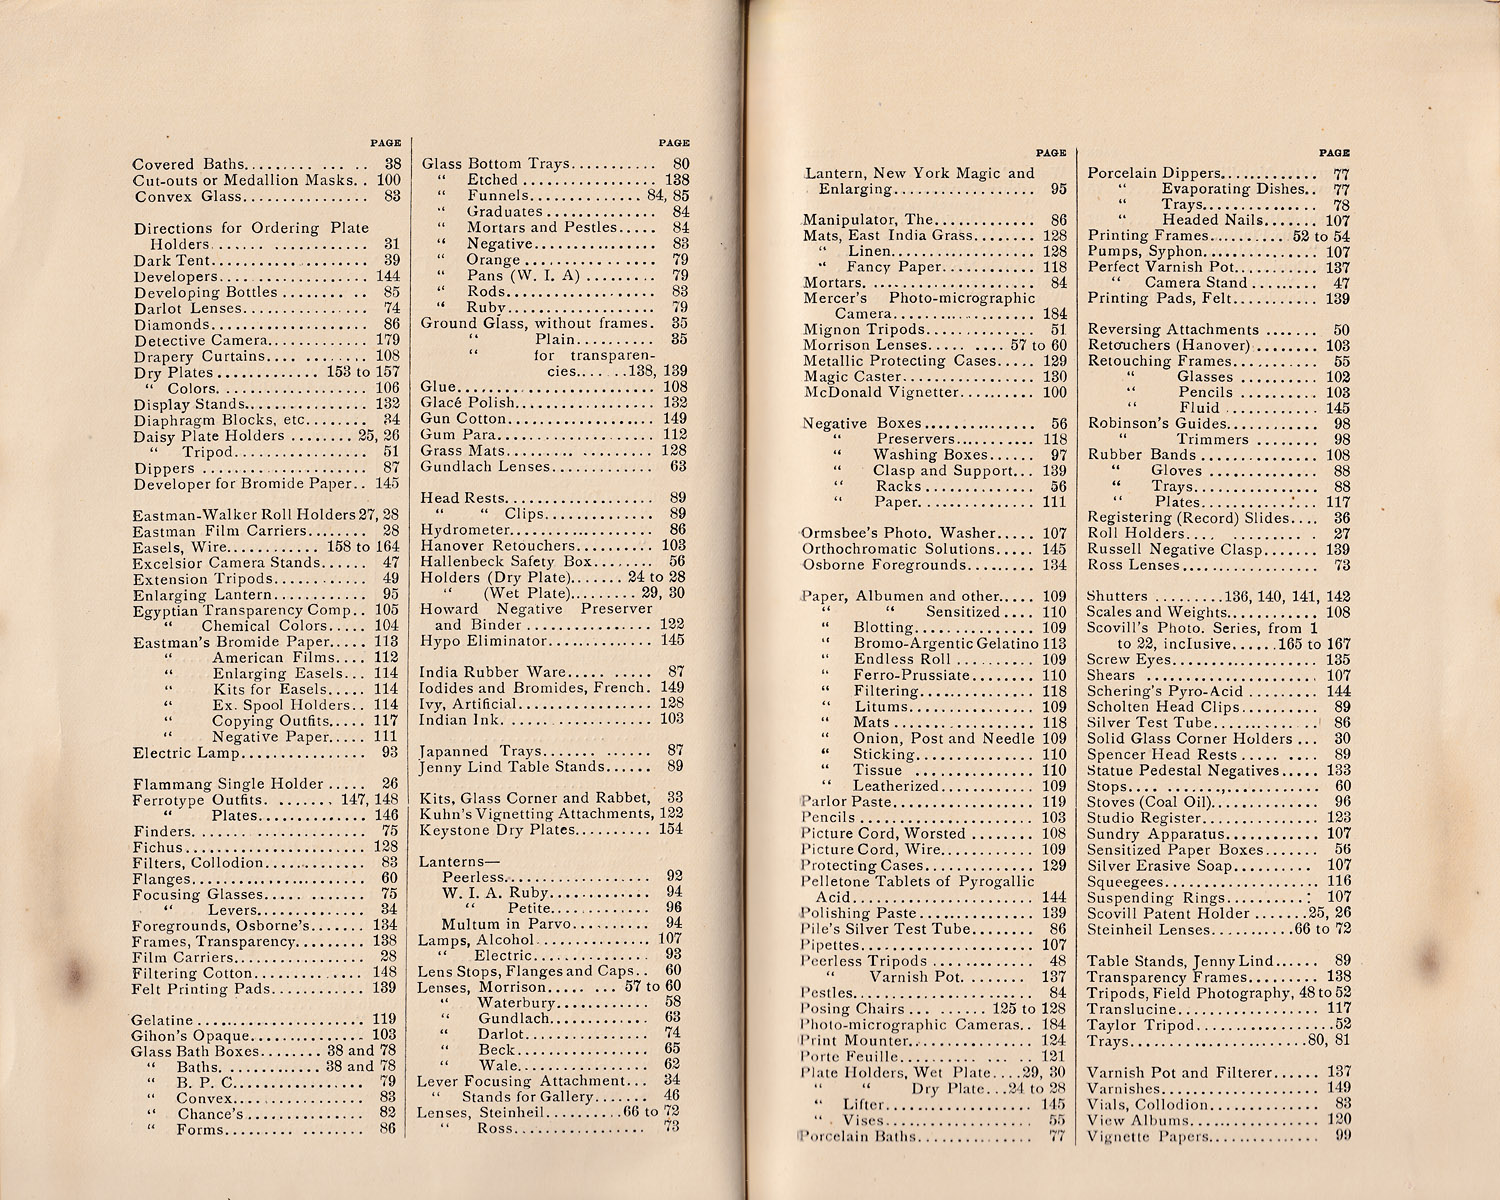 1409.scovill.david.tucker-1887.june-index2-index3-1500.jpg